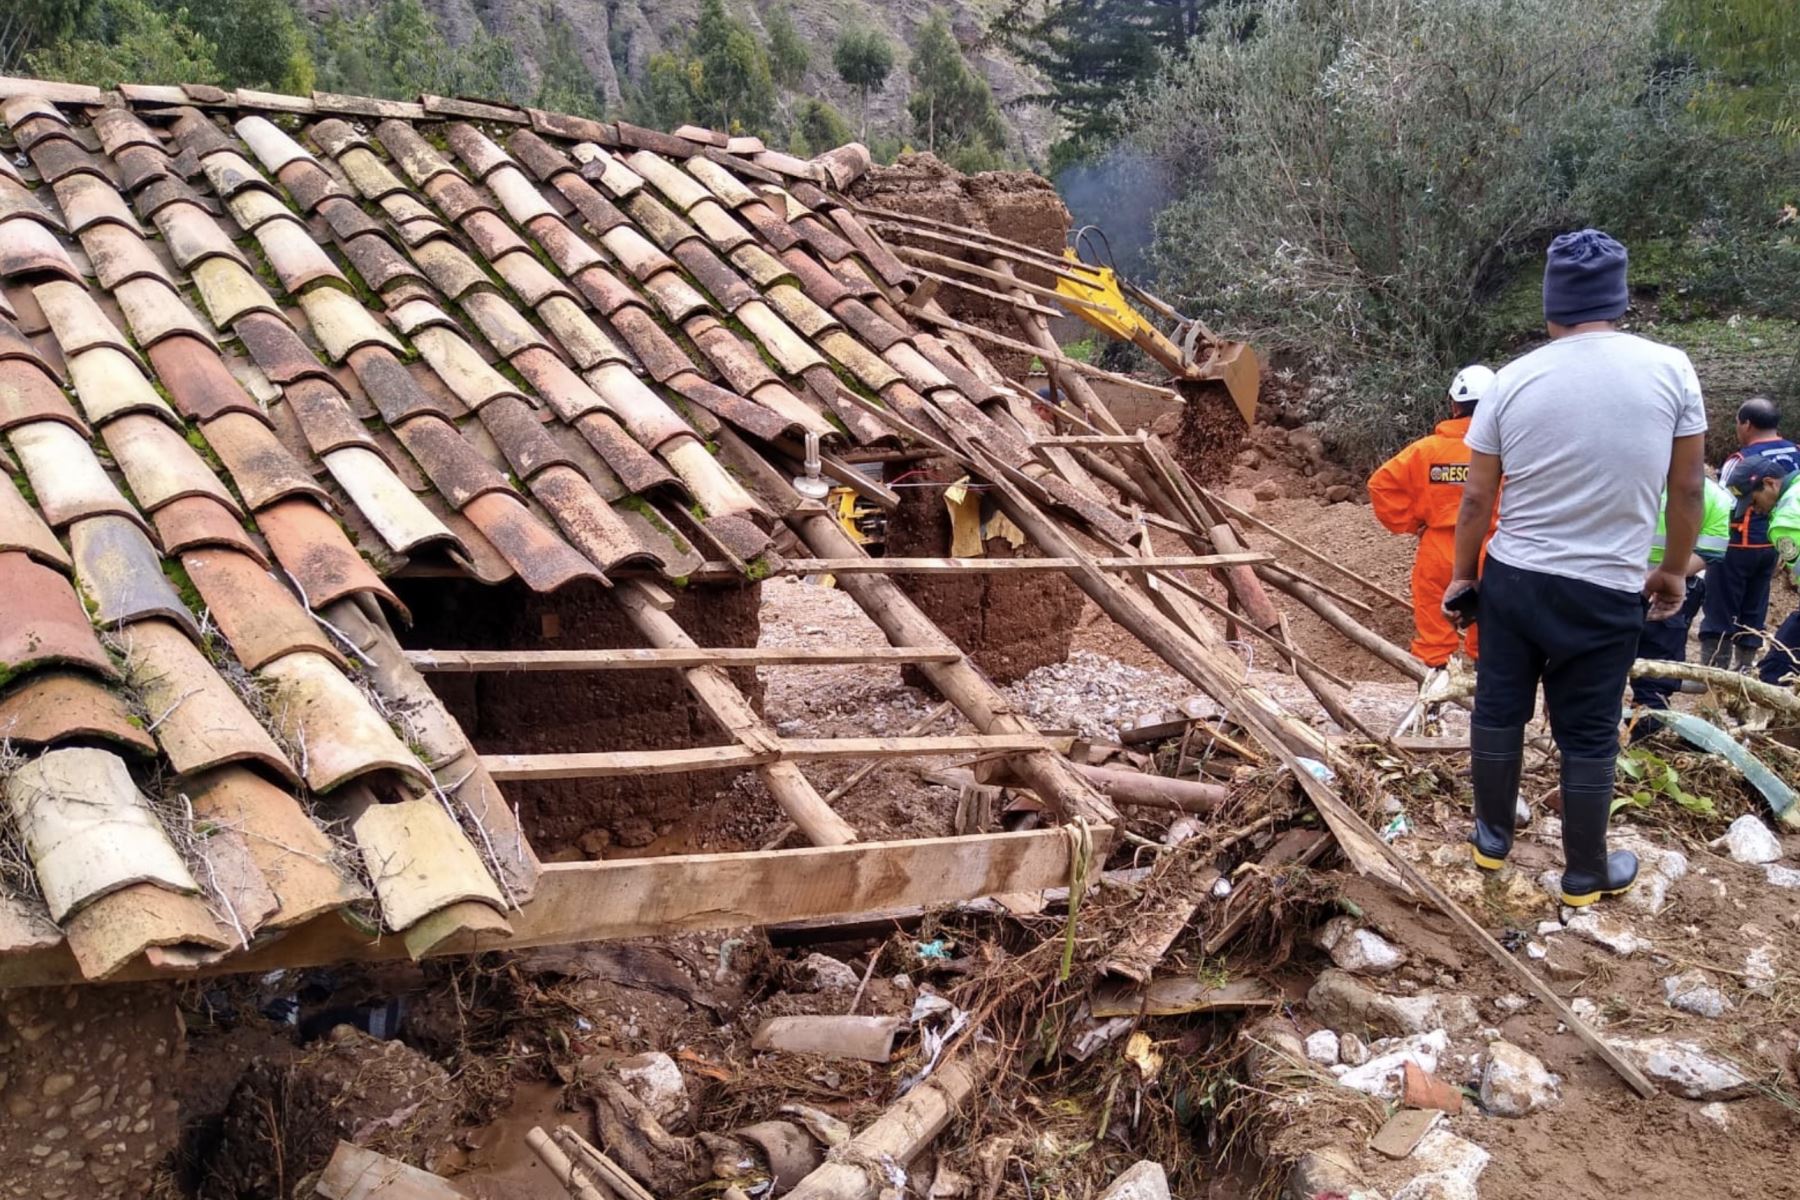 Lluvias intensas activaron la quebrada Pacayhuarmi, que produjo un huaico en el distrito de Ahuac, provincia de Chupaca, región Junín. Foto: Cortesía Pedro Tinoco